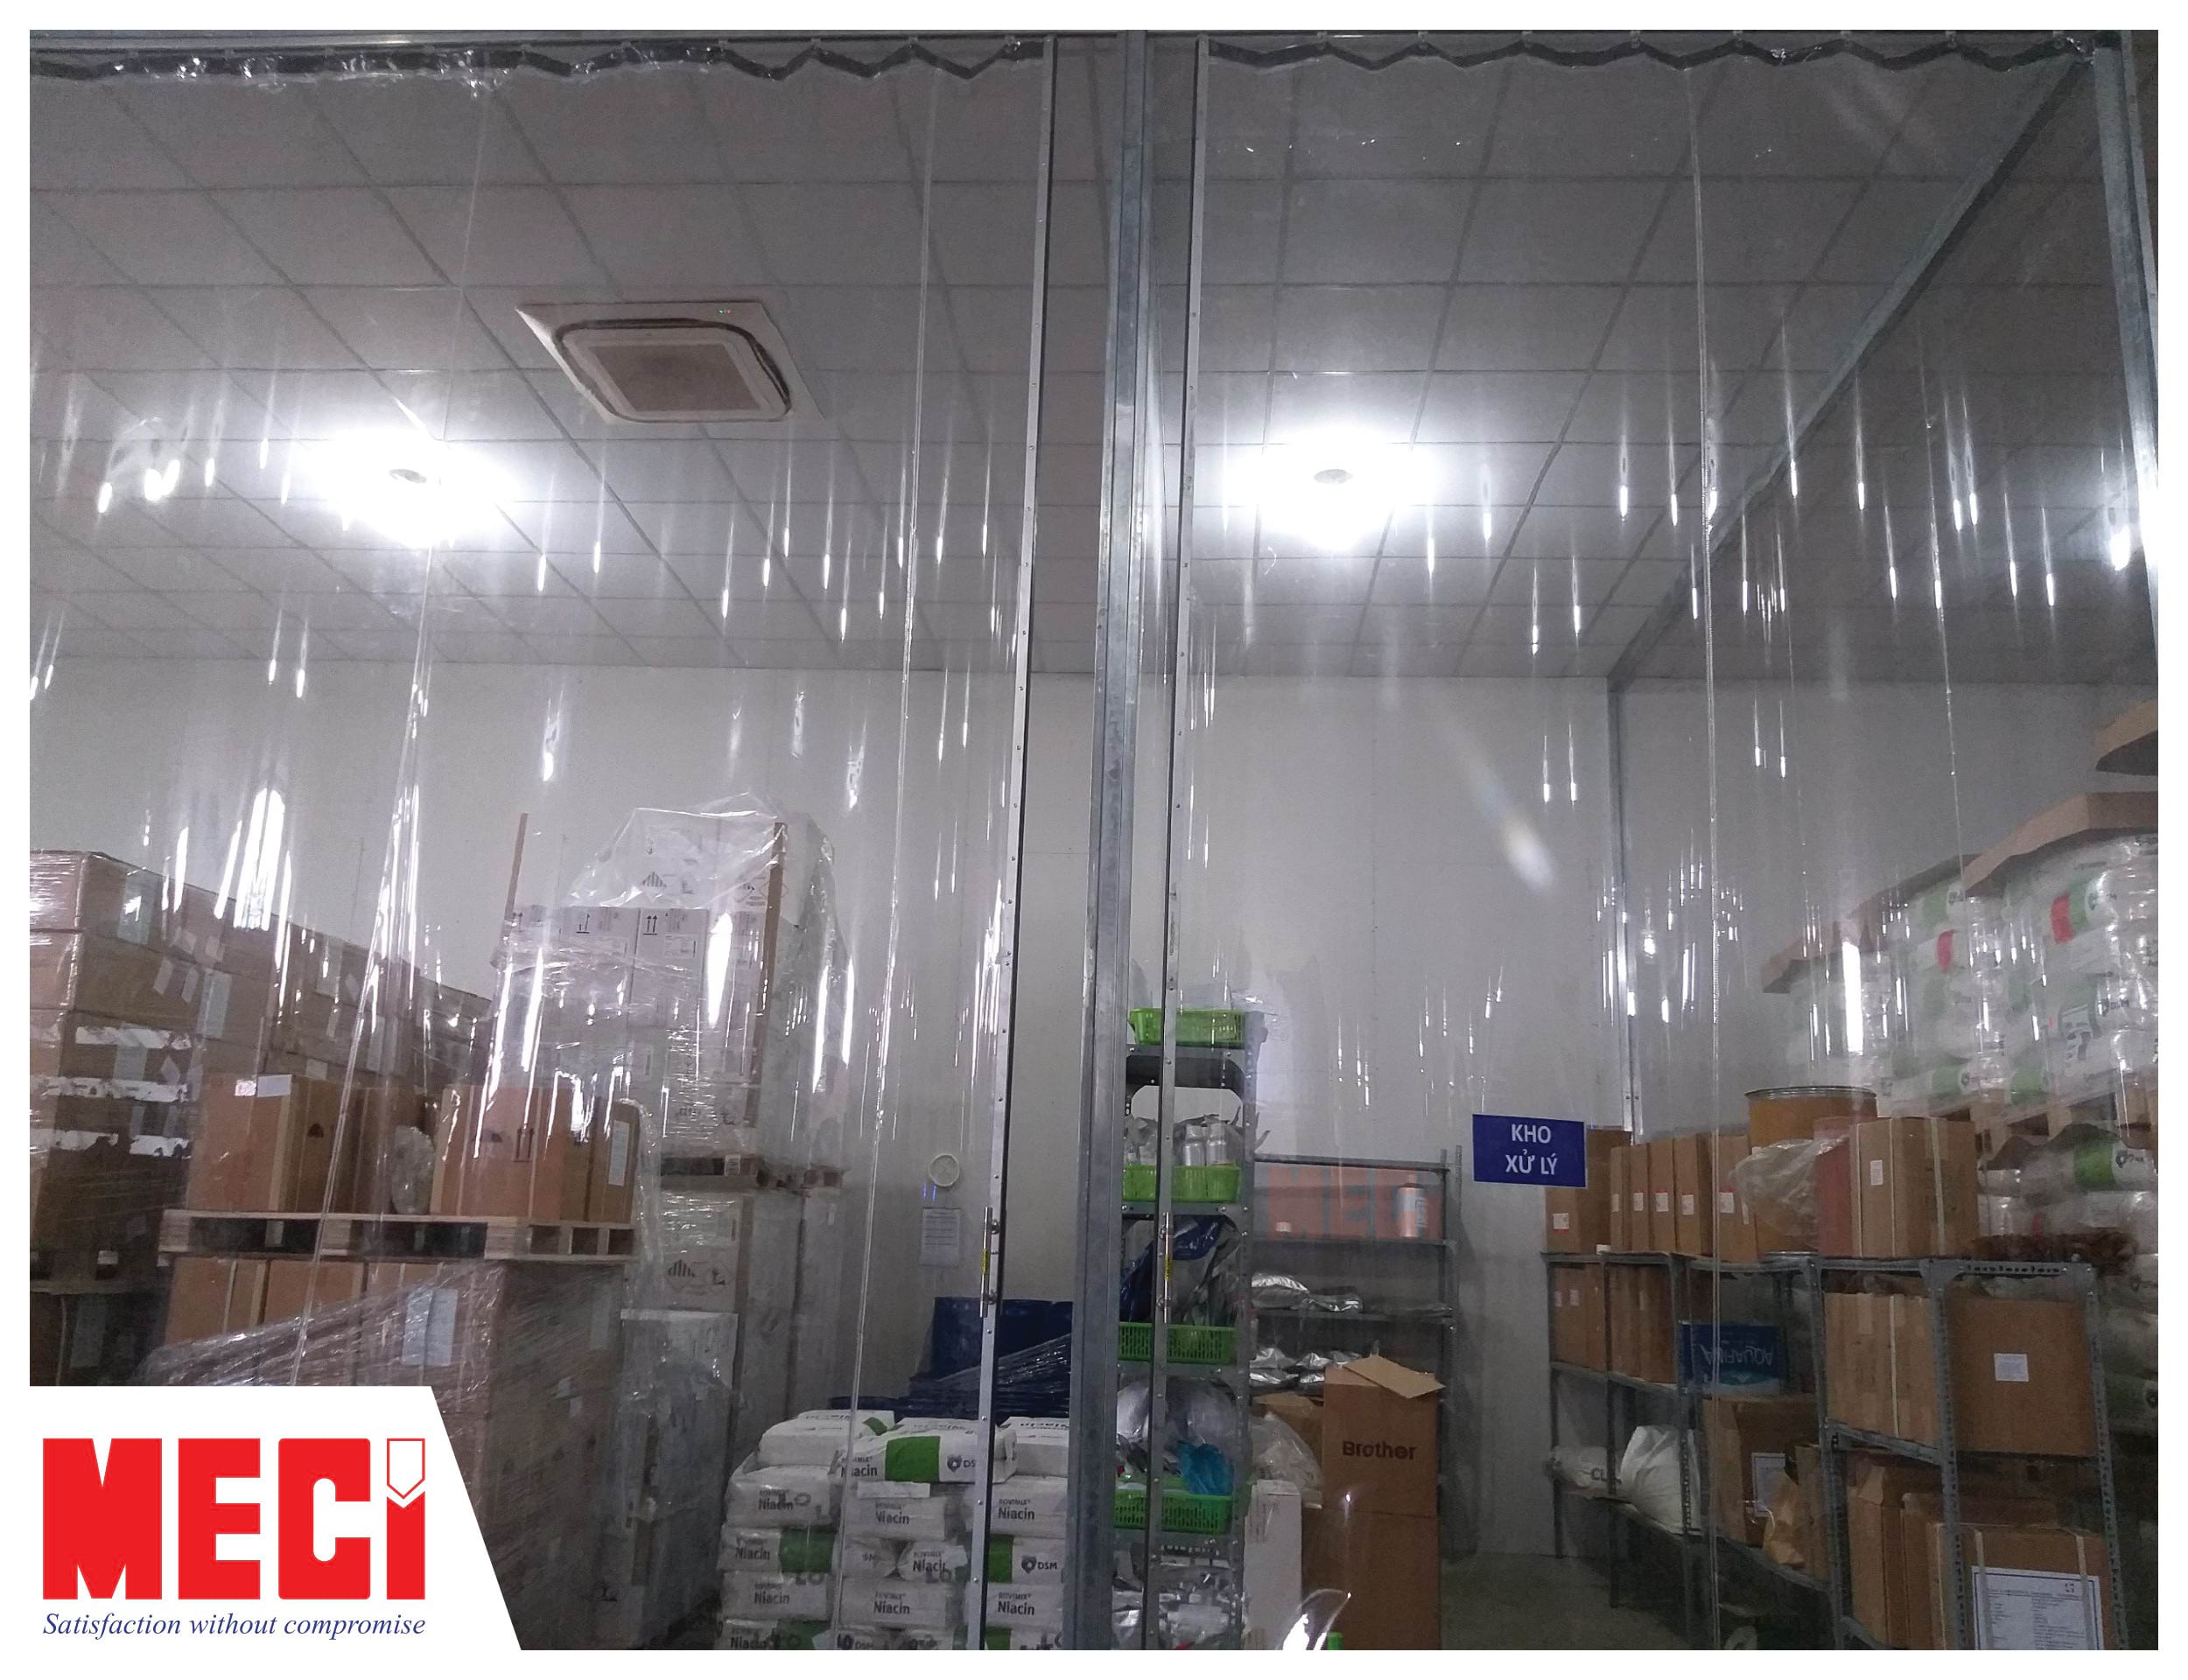 Màn nhựa PVC khổ lớn, trong suốt, có thanh tay cầm lắp đặt tại kho xử lý. Trong kho có rất nhiều hàng hóa.